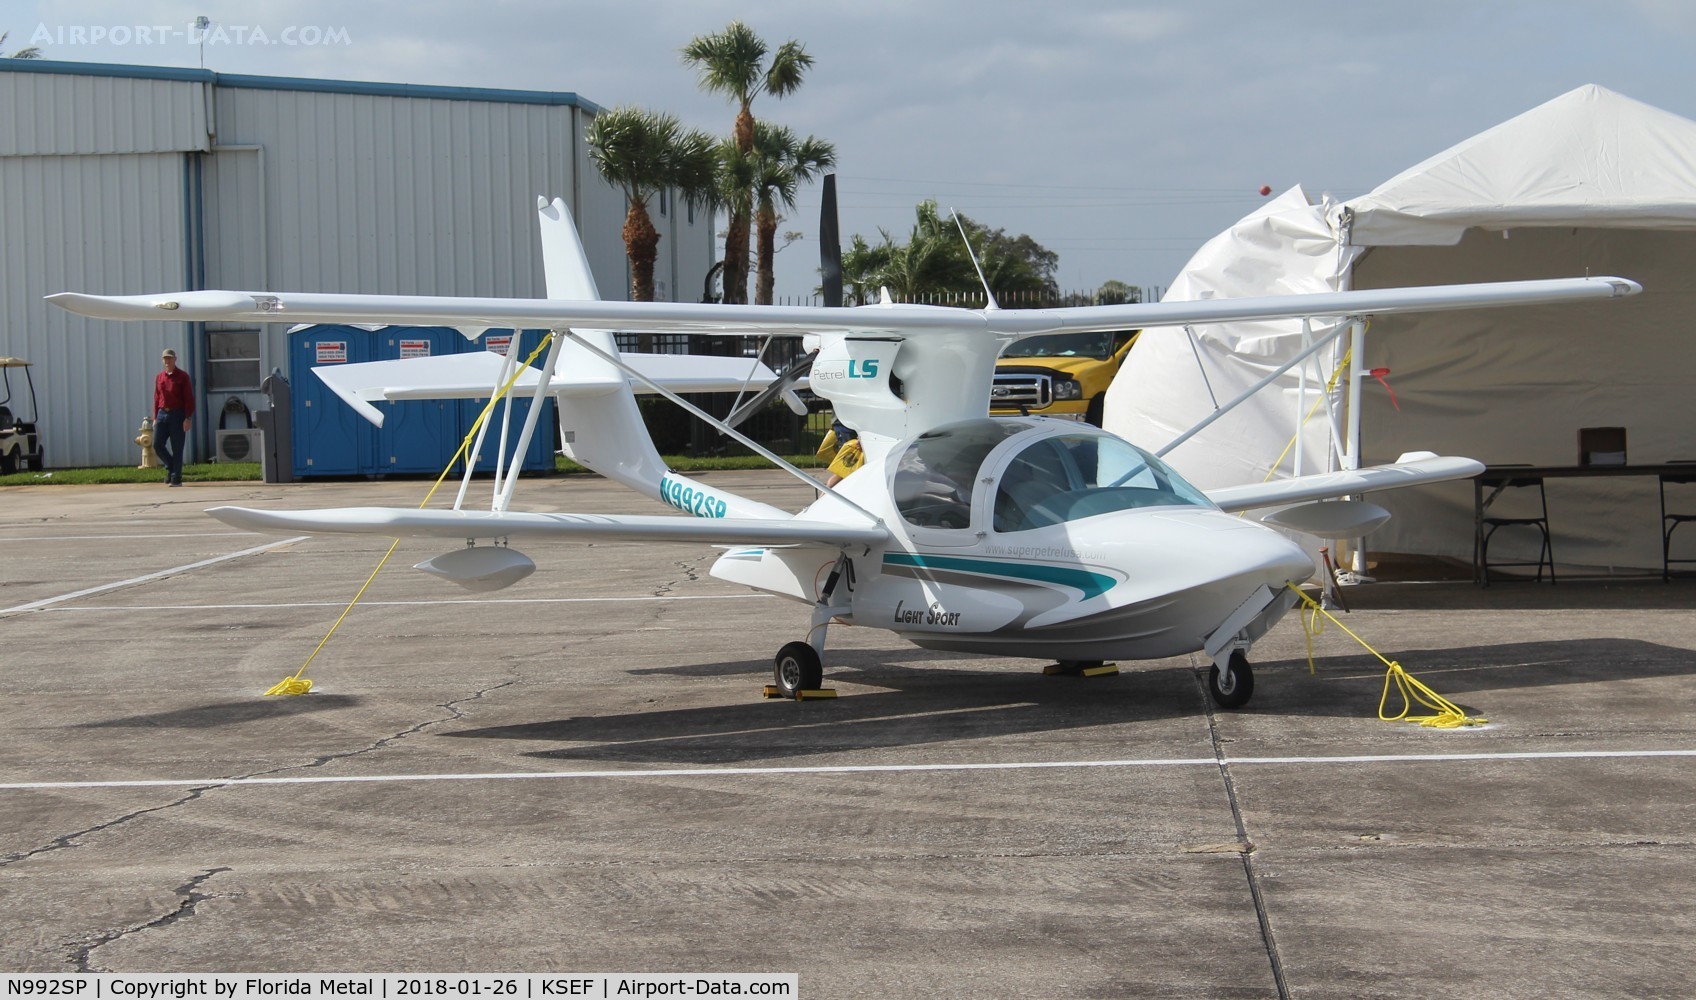 N992SP, 2015 Scoda Aeronáutica Super Petrel LS C/N S0347, Sebring 2018